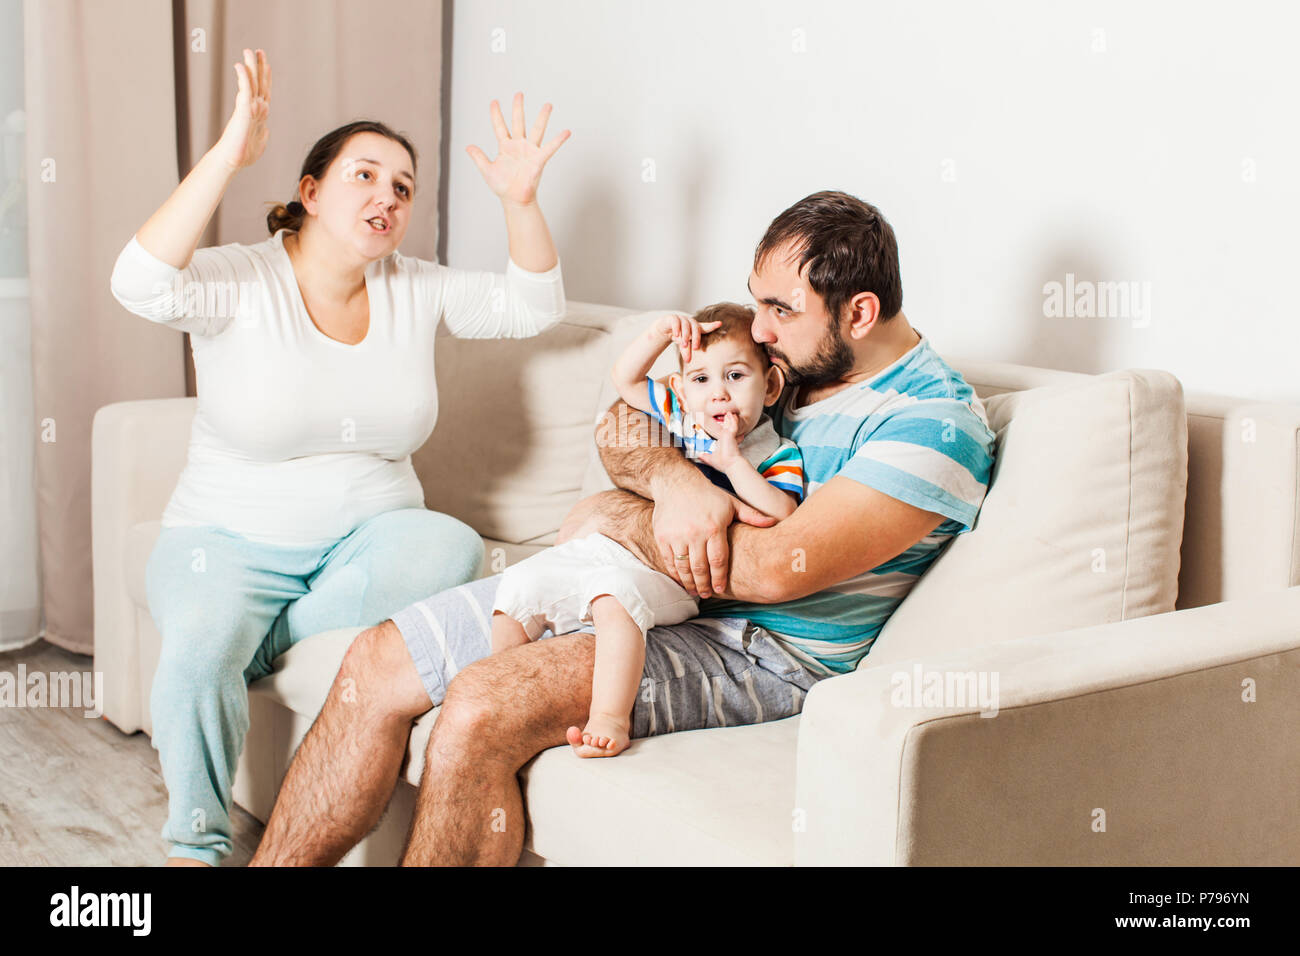 A quarrel between the parents. Stock Photo